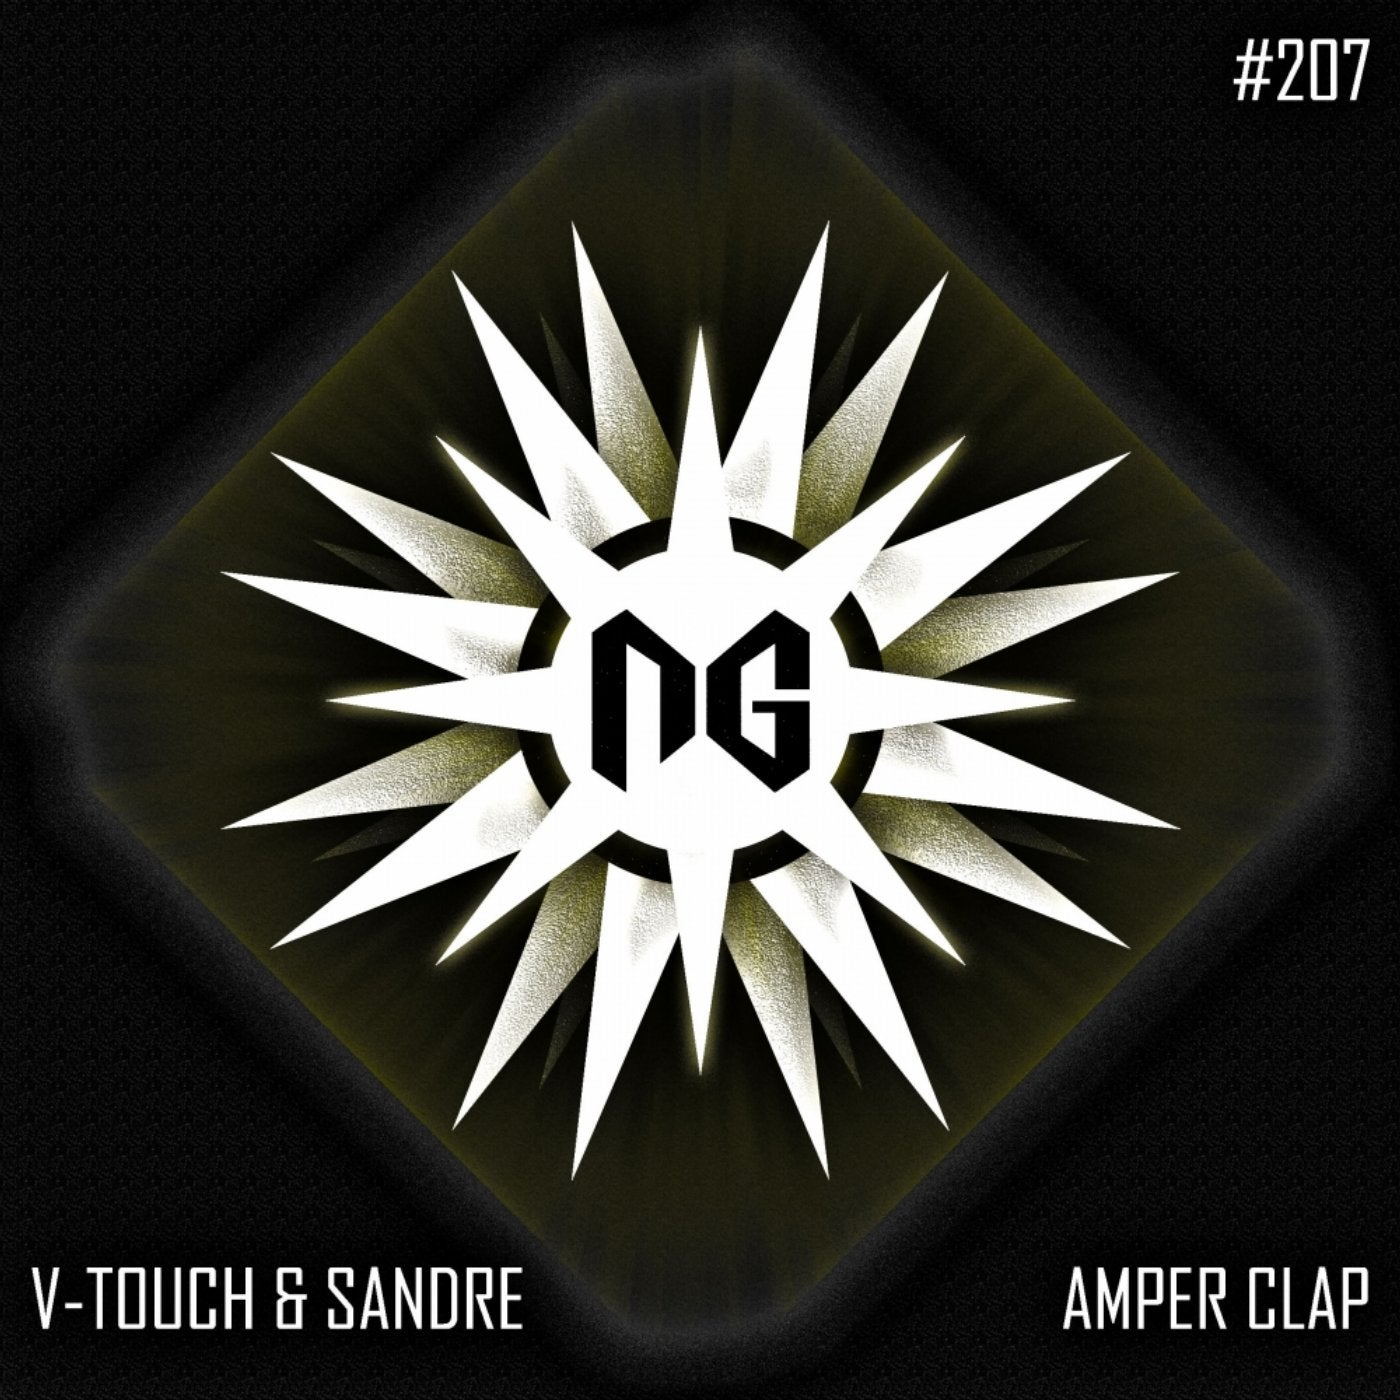 Amper Clap